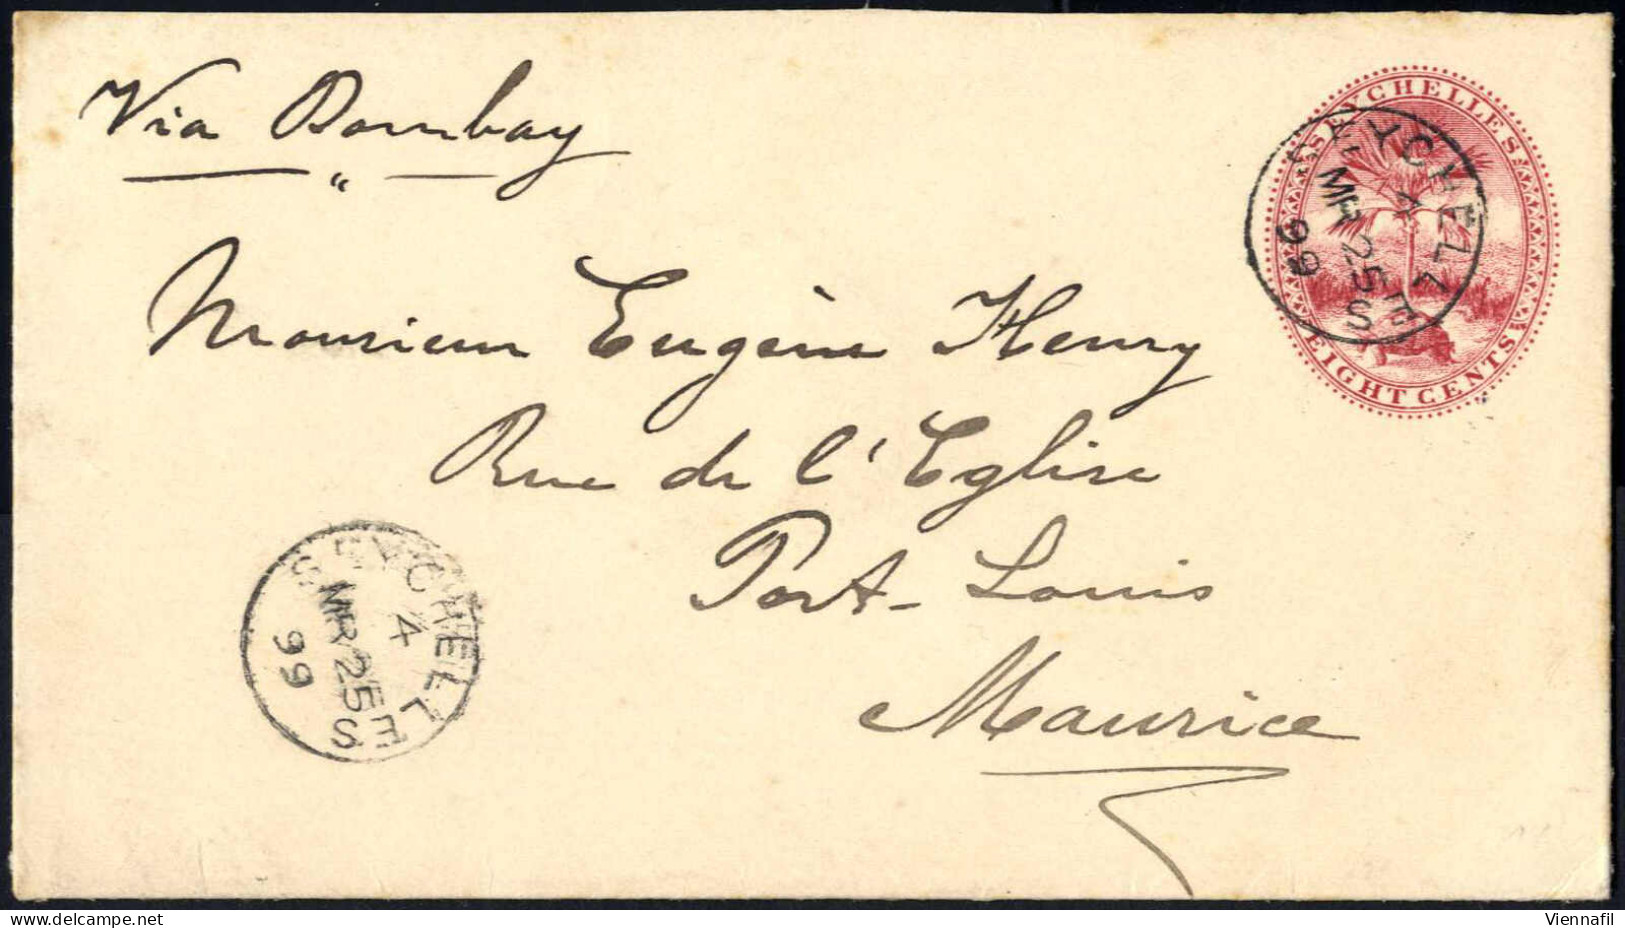 Cover 1899, Ganzsachenbrief über 8 C. Vom 25.3. über Bombay Nach Port-Louis (Mauritius) - Seychellen (...-1976)